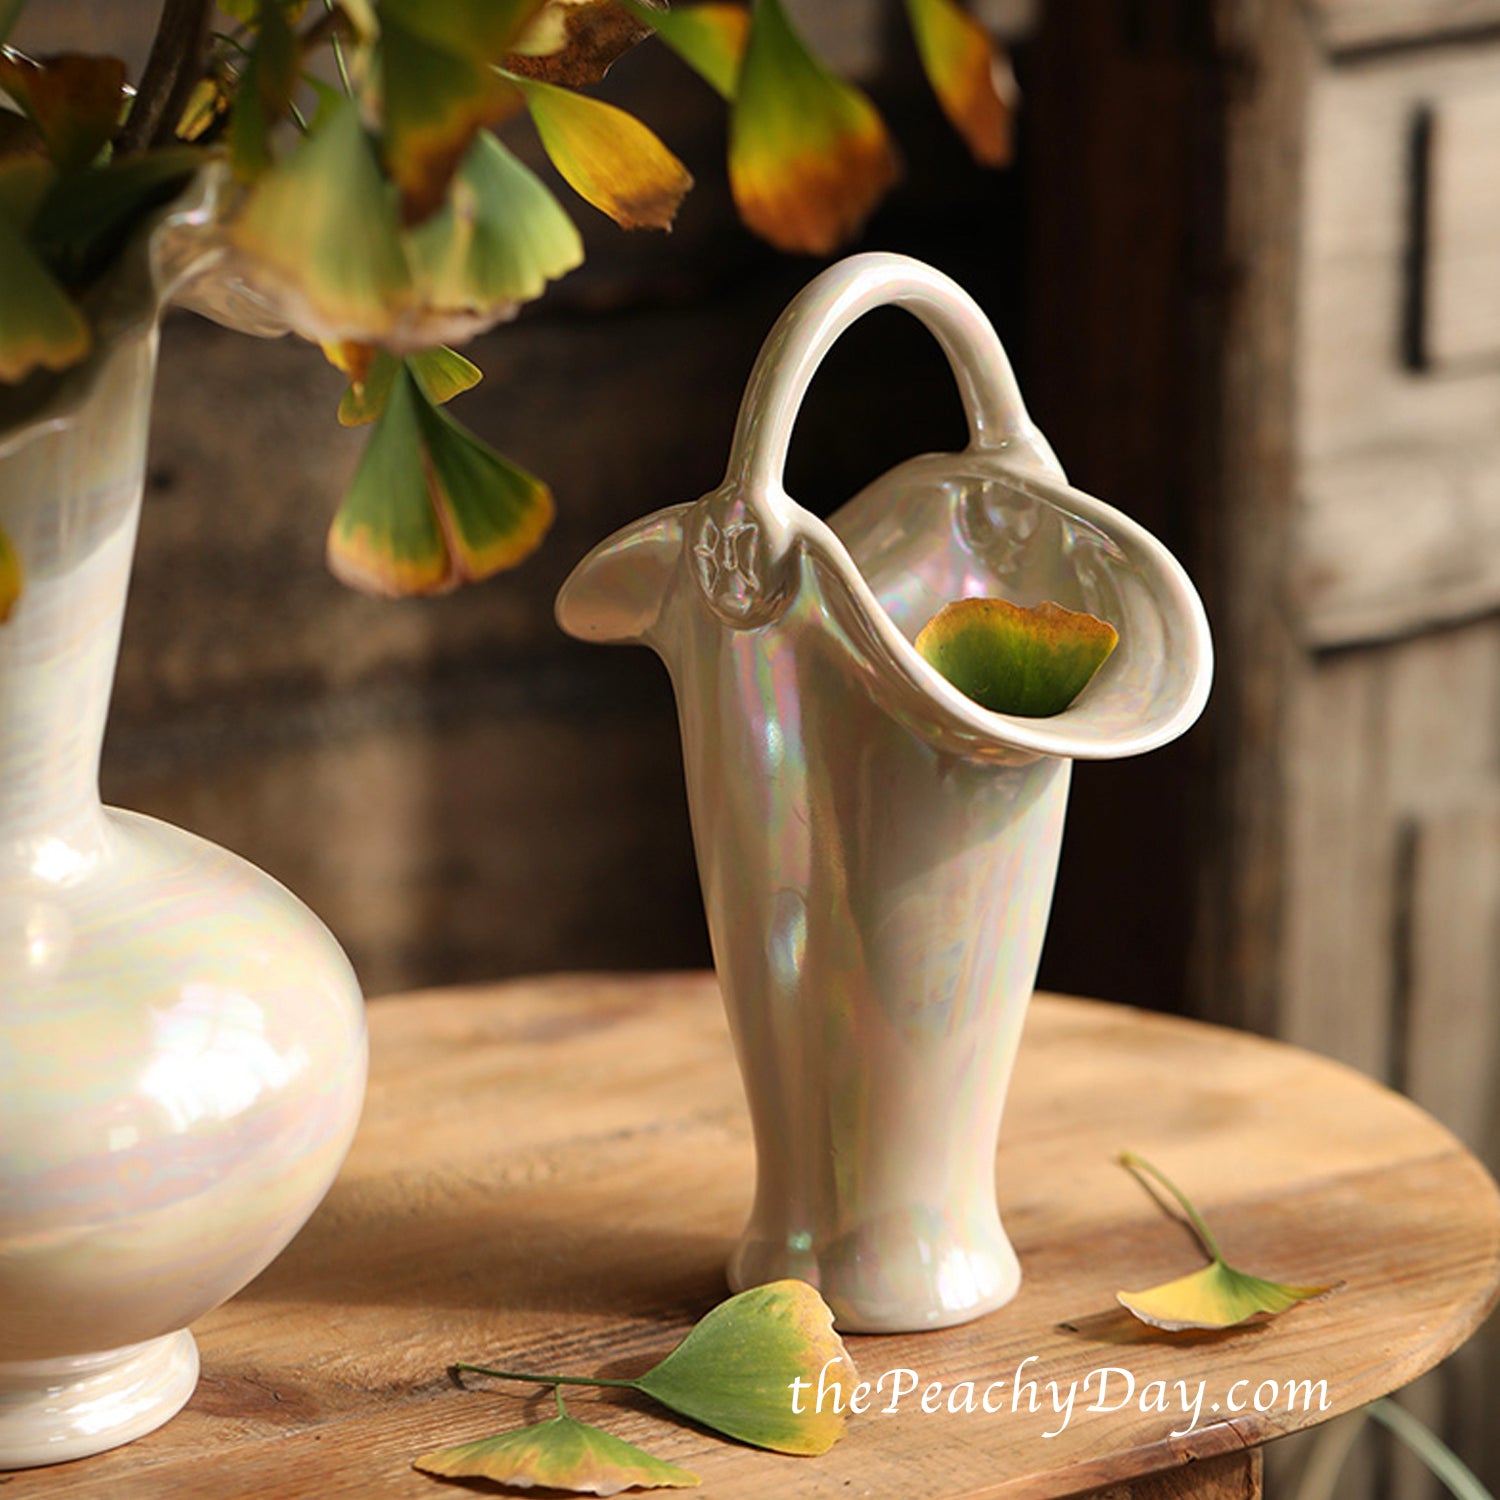 Pearlescent Ceramic Vase fenton vase pink iridescent jar vase decorative aesthetic unique mid century vase pastel pink vases